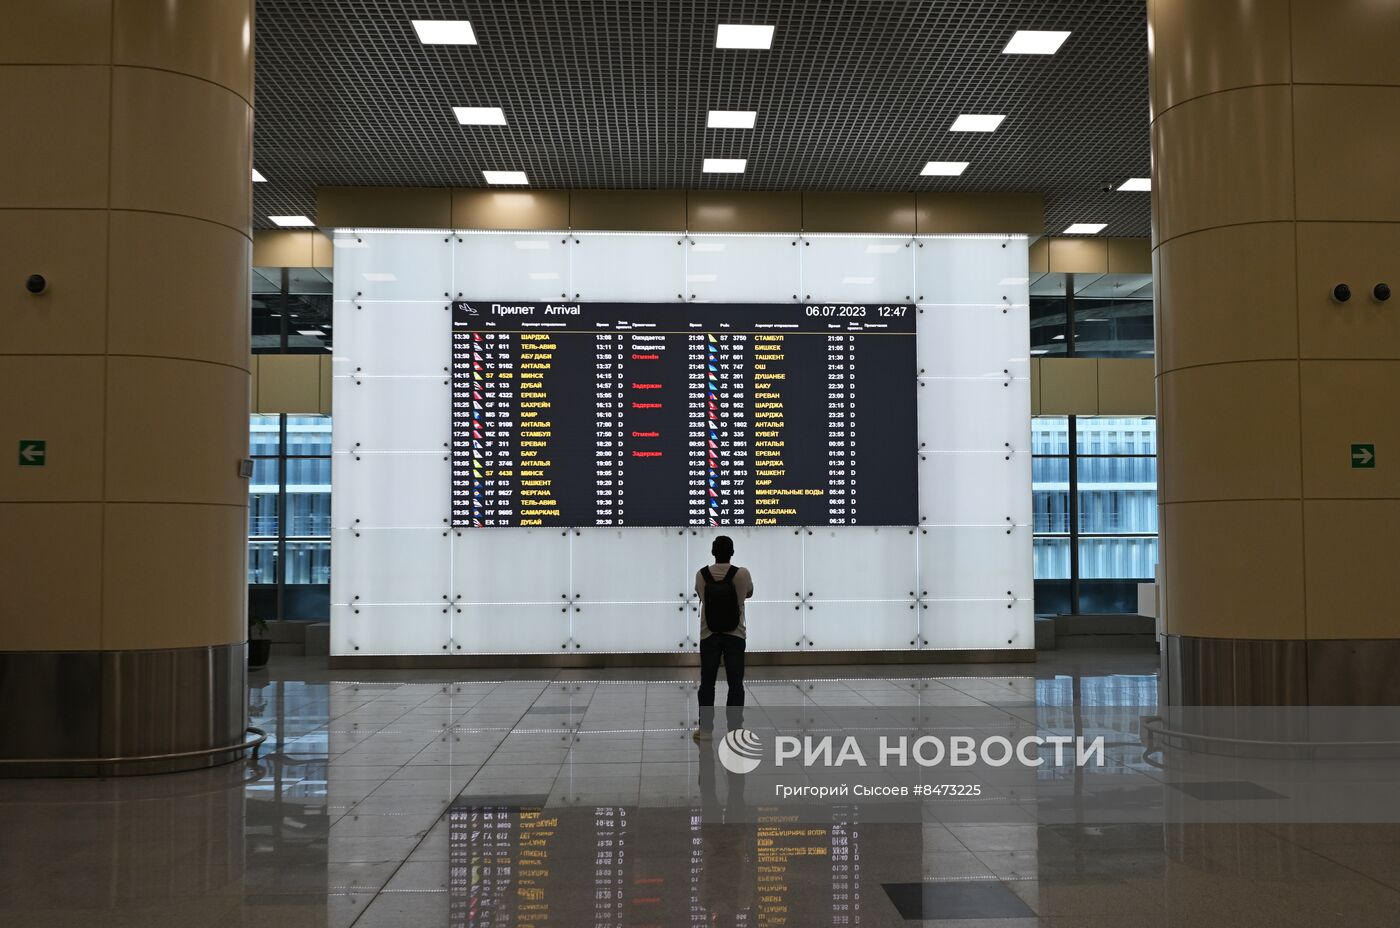 Новый сегмент пассажирского терминала московского аэропорта Домодедово